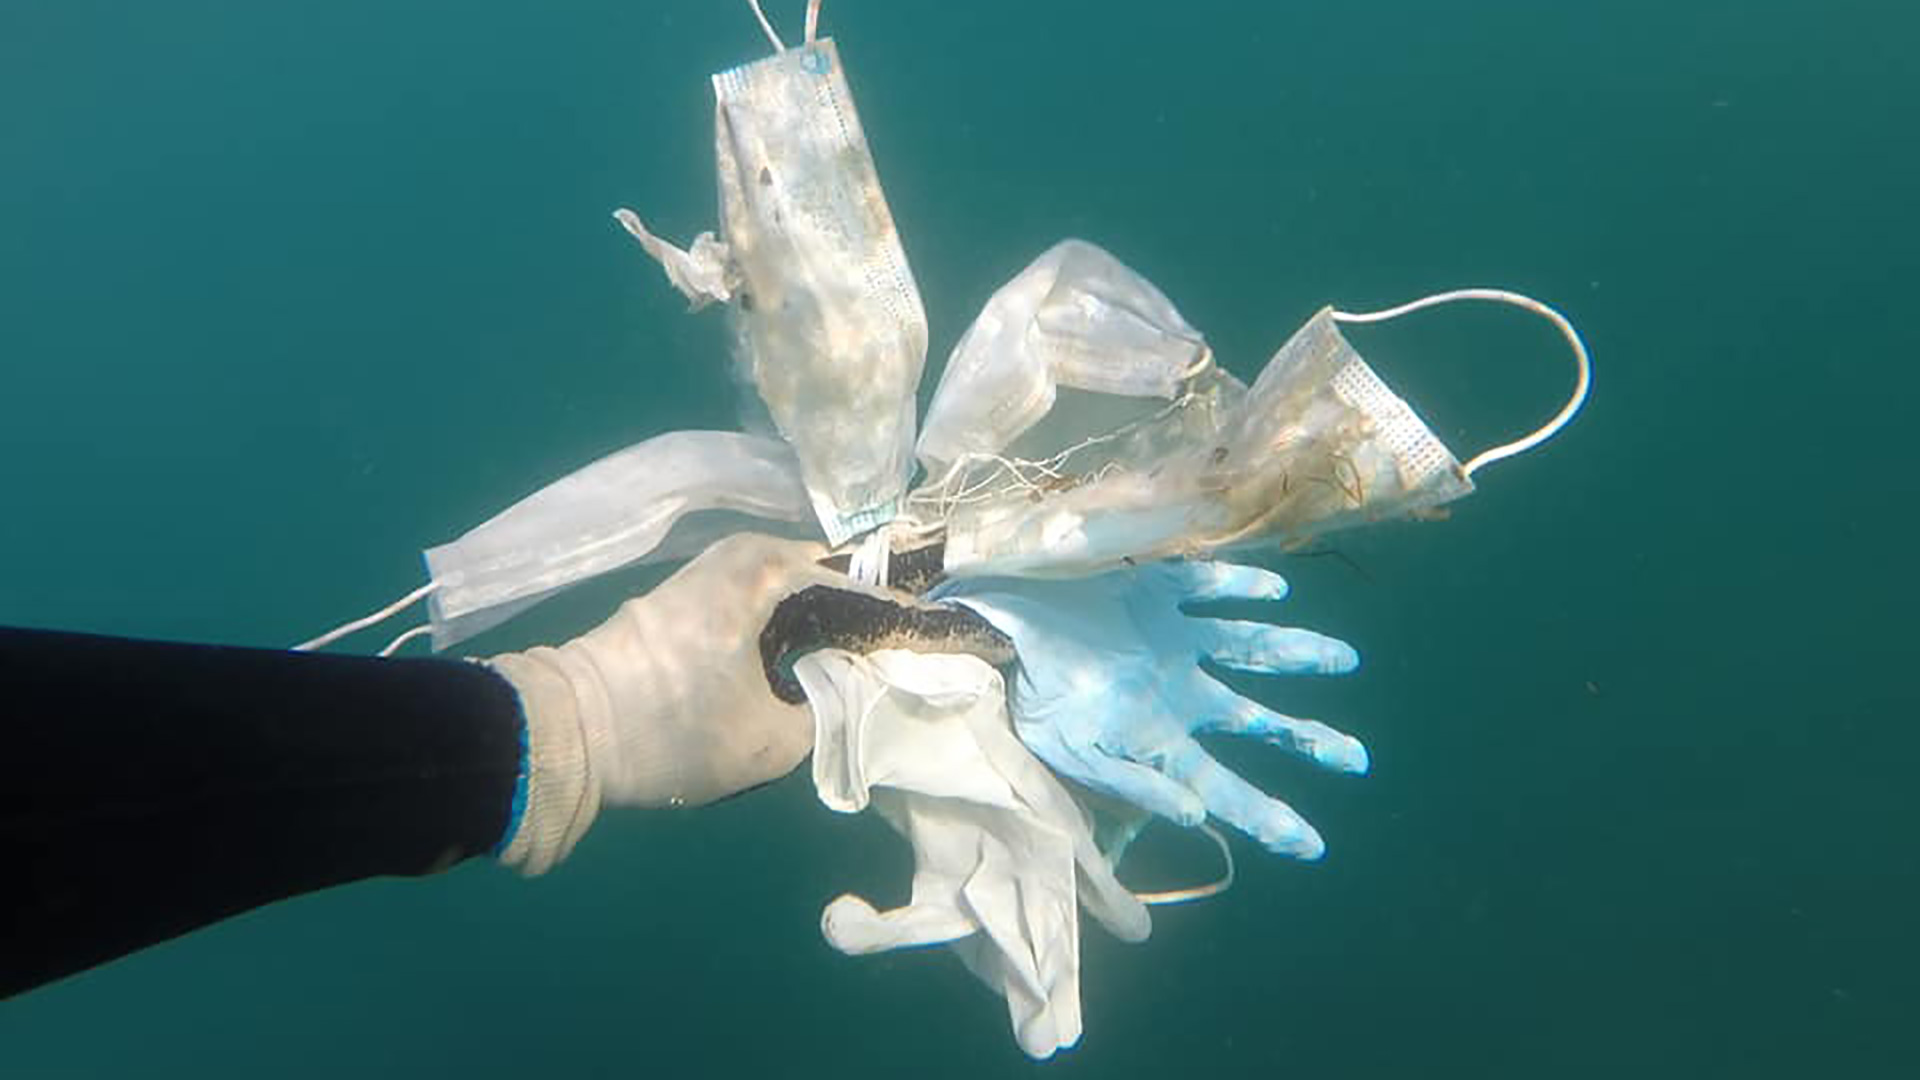 El material sanitario inunda la costa francesa: "Pronto habrá más mascarillas que medusas"